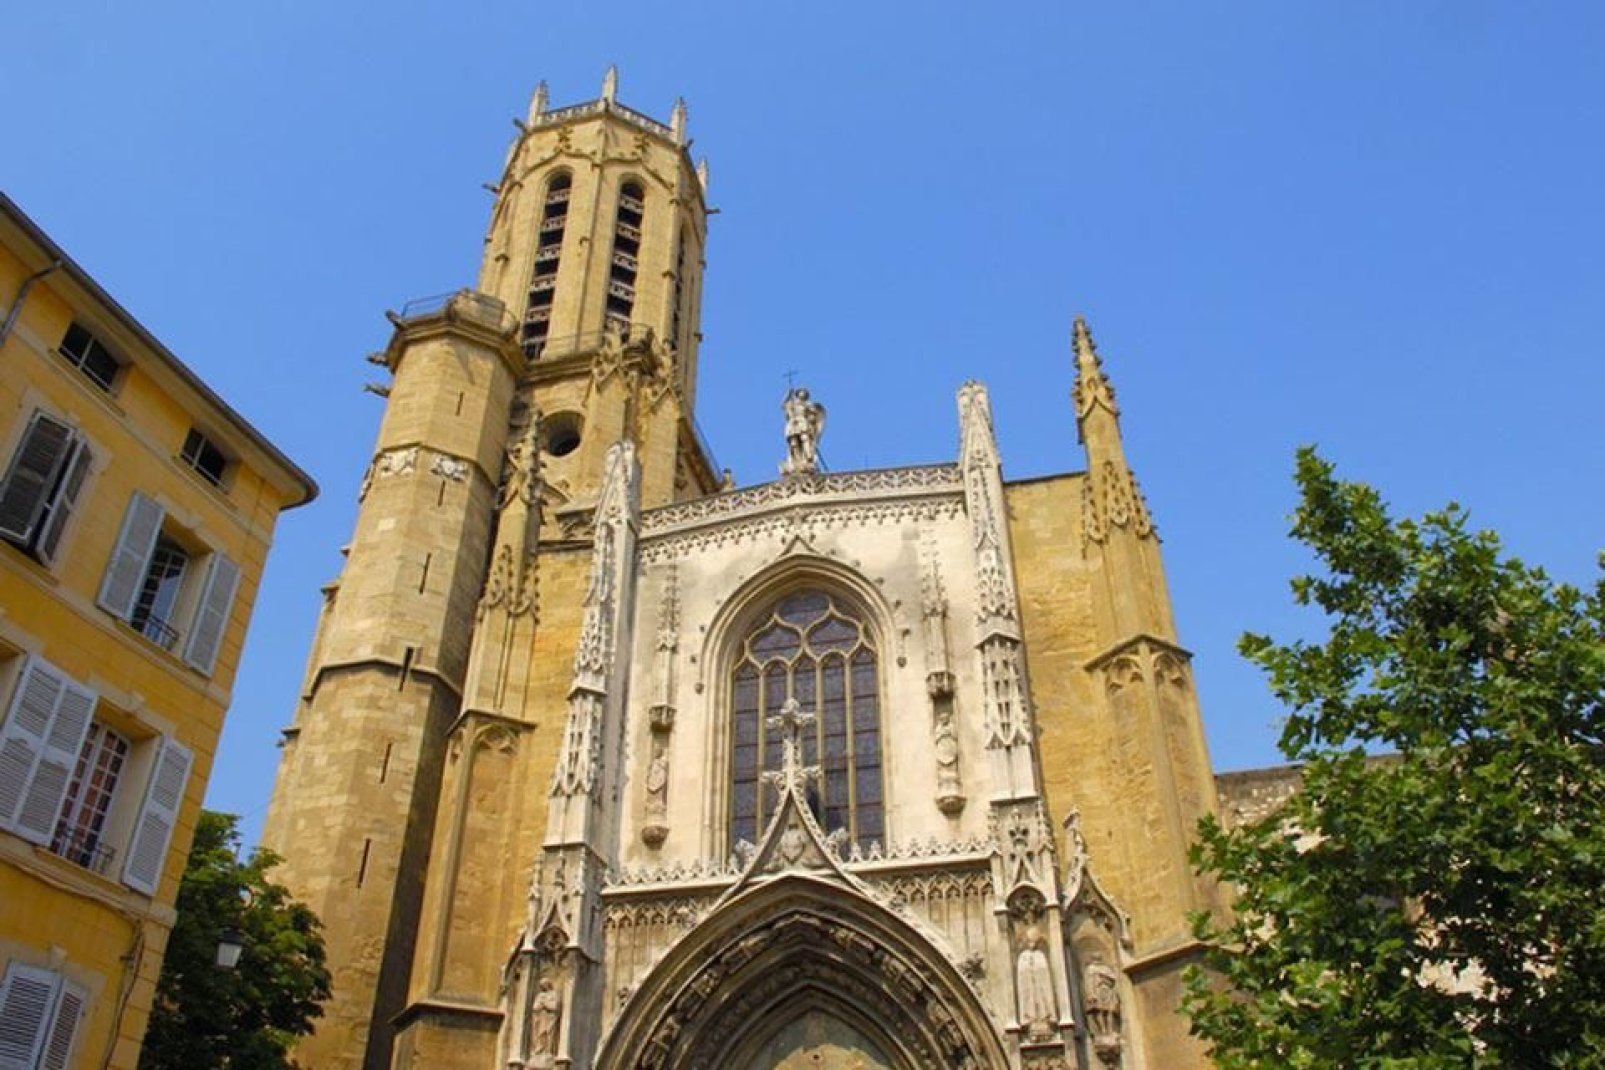 Die Kathedrale Saint-Sauveur von Aix-en-Provence ist ein in ihrer Art einzigartiges Bauwerk, das sowohl romanische als auch gotische Stilelemente aufweist.